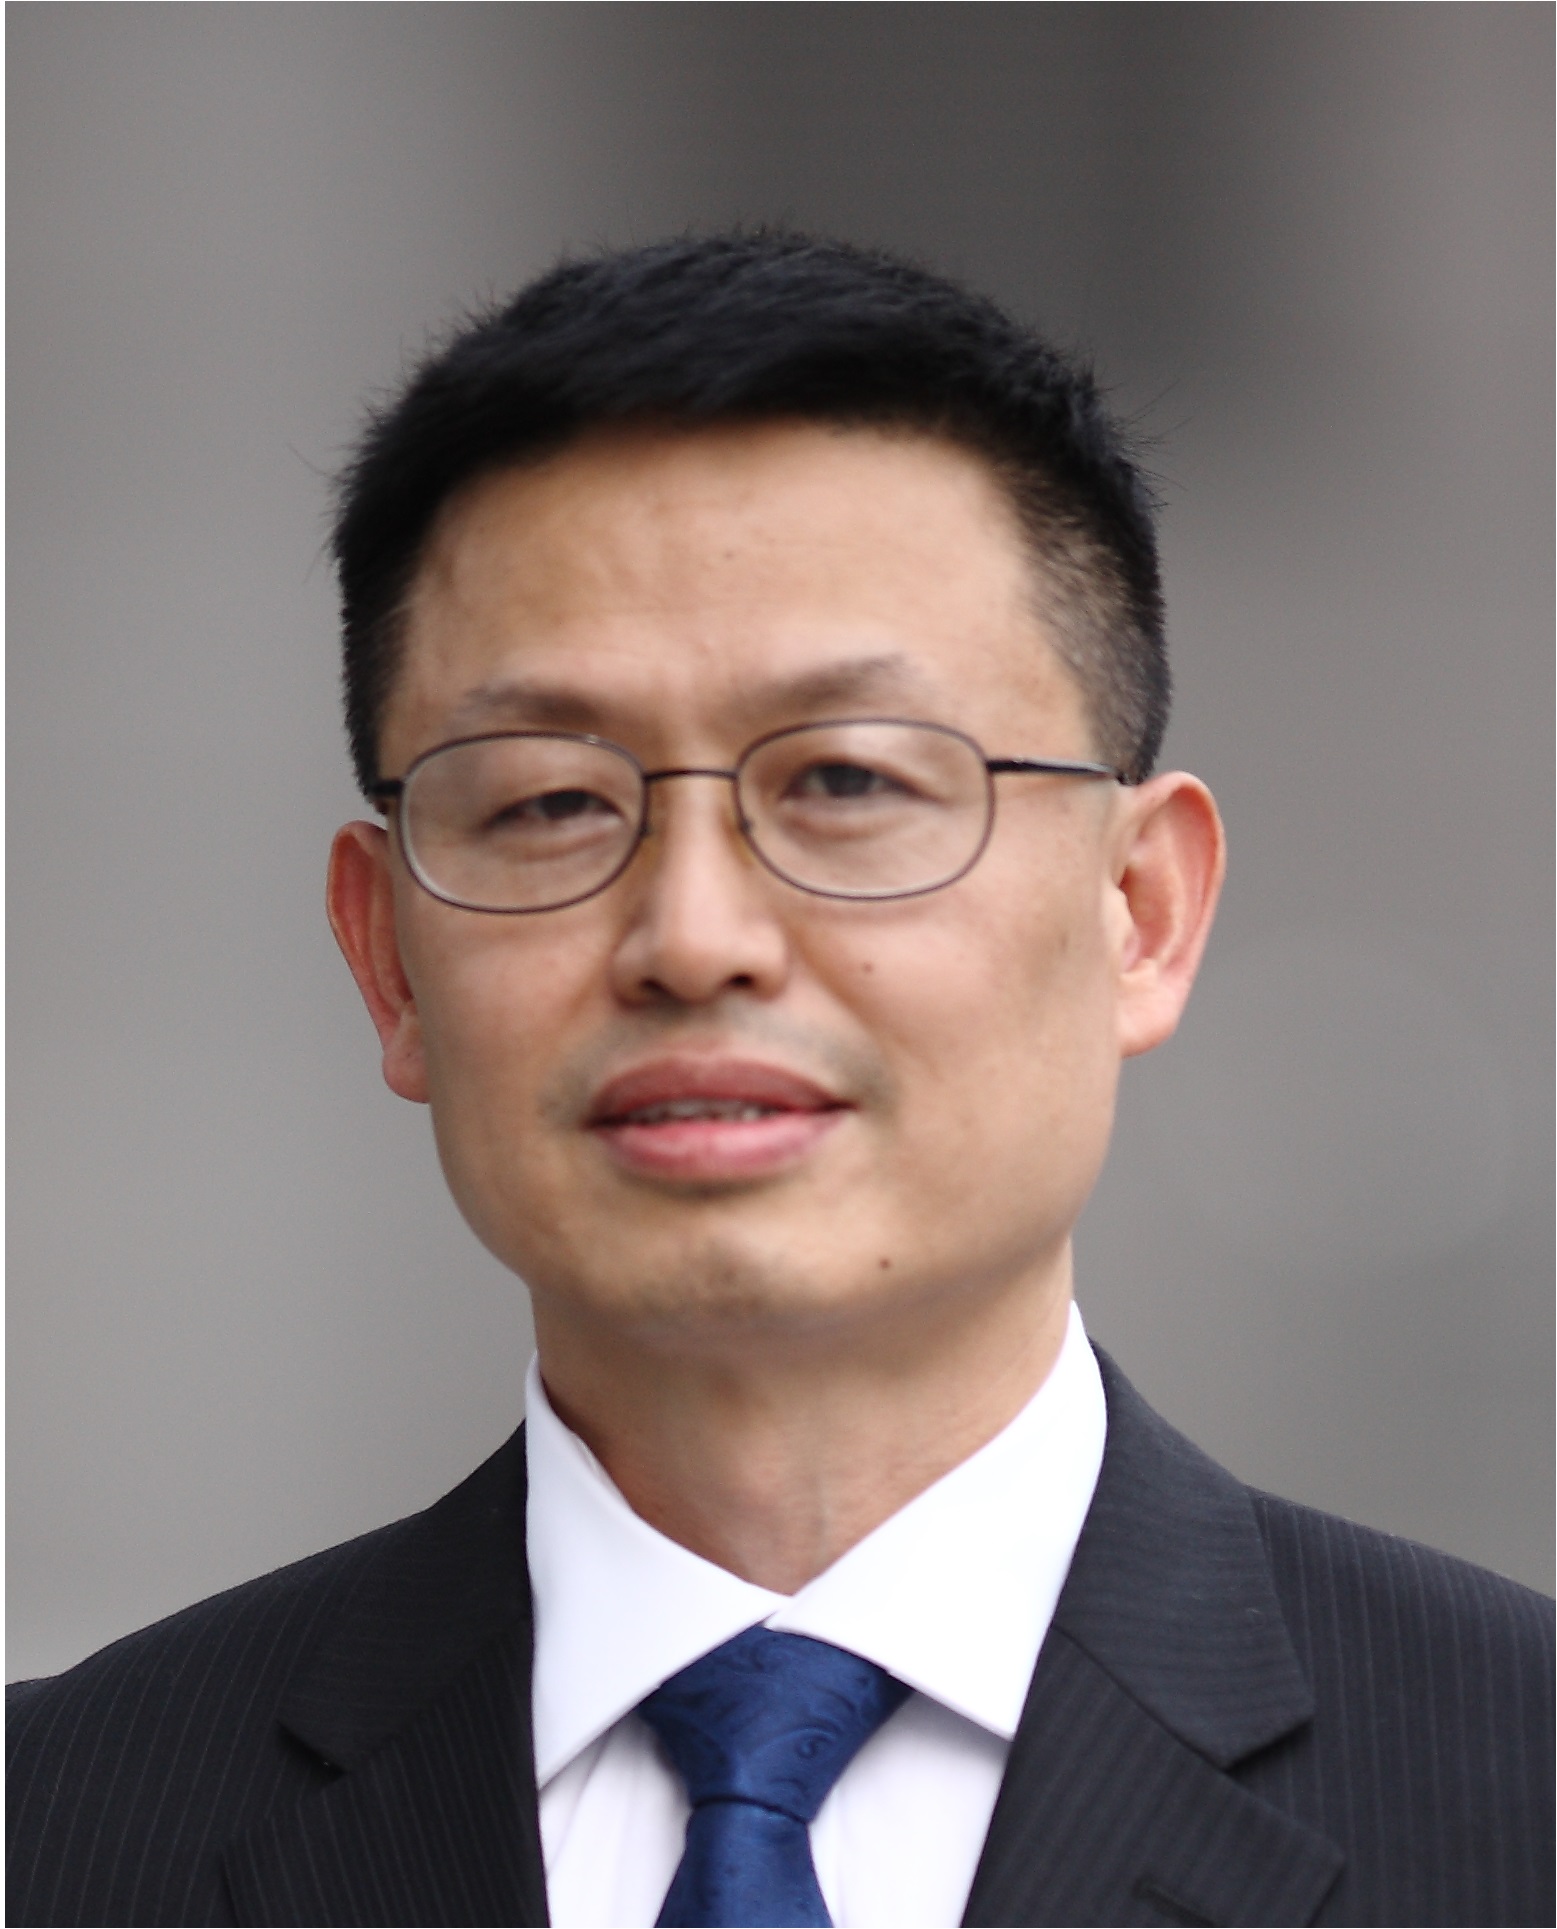 SEMICON China - Dr. Hongqi Xiang